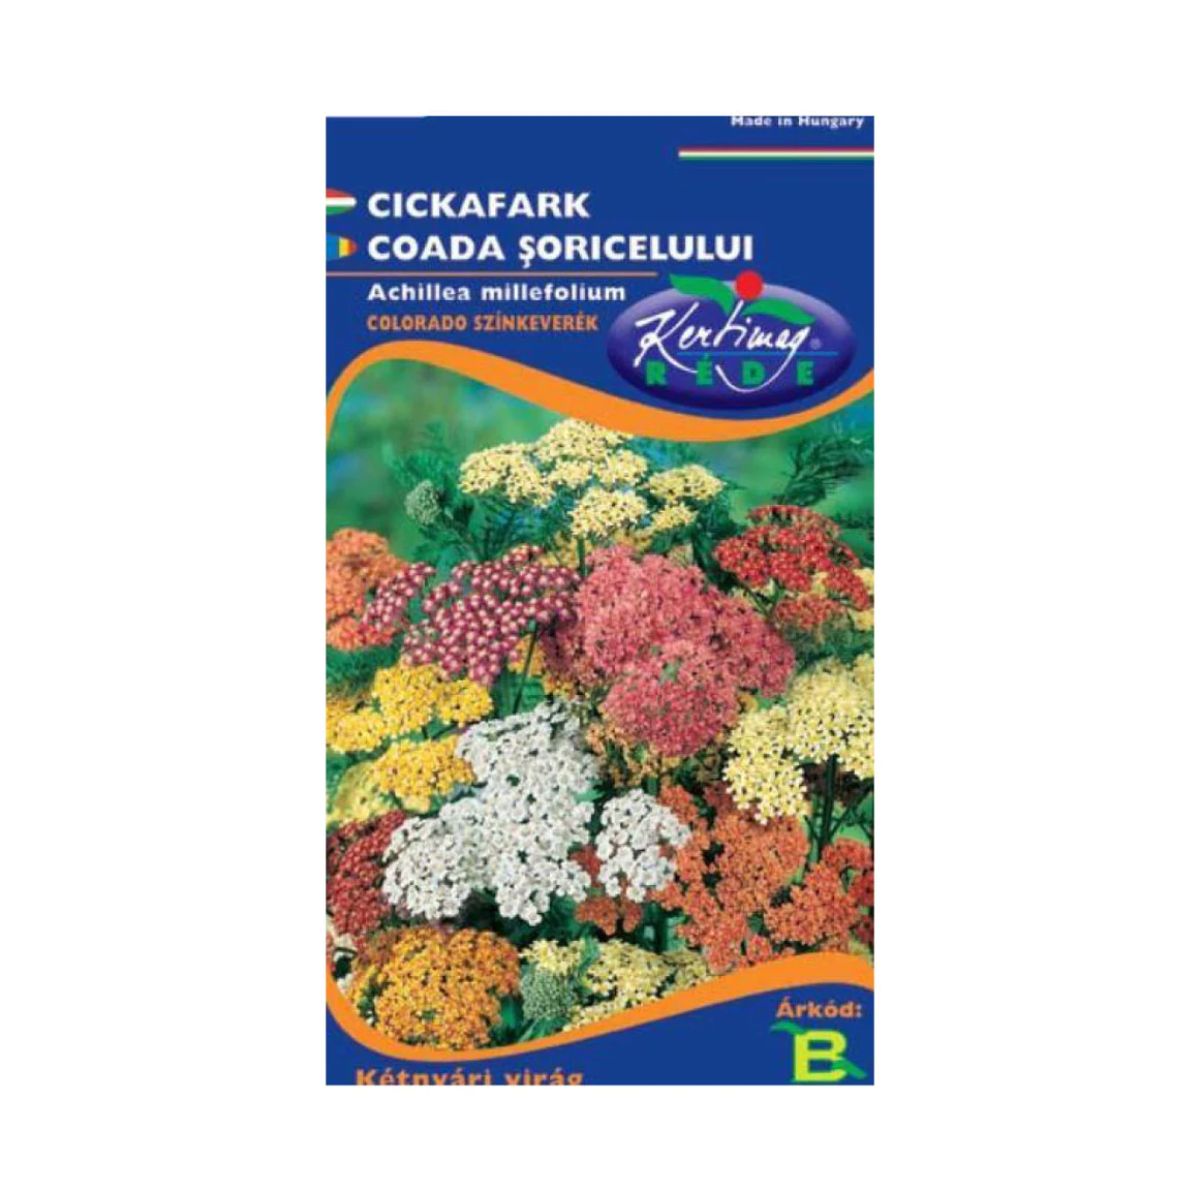 Seminte flori - Seminte de COADA SORICELULUI, 1 gr, KERTIMAG, hectarul.ro